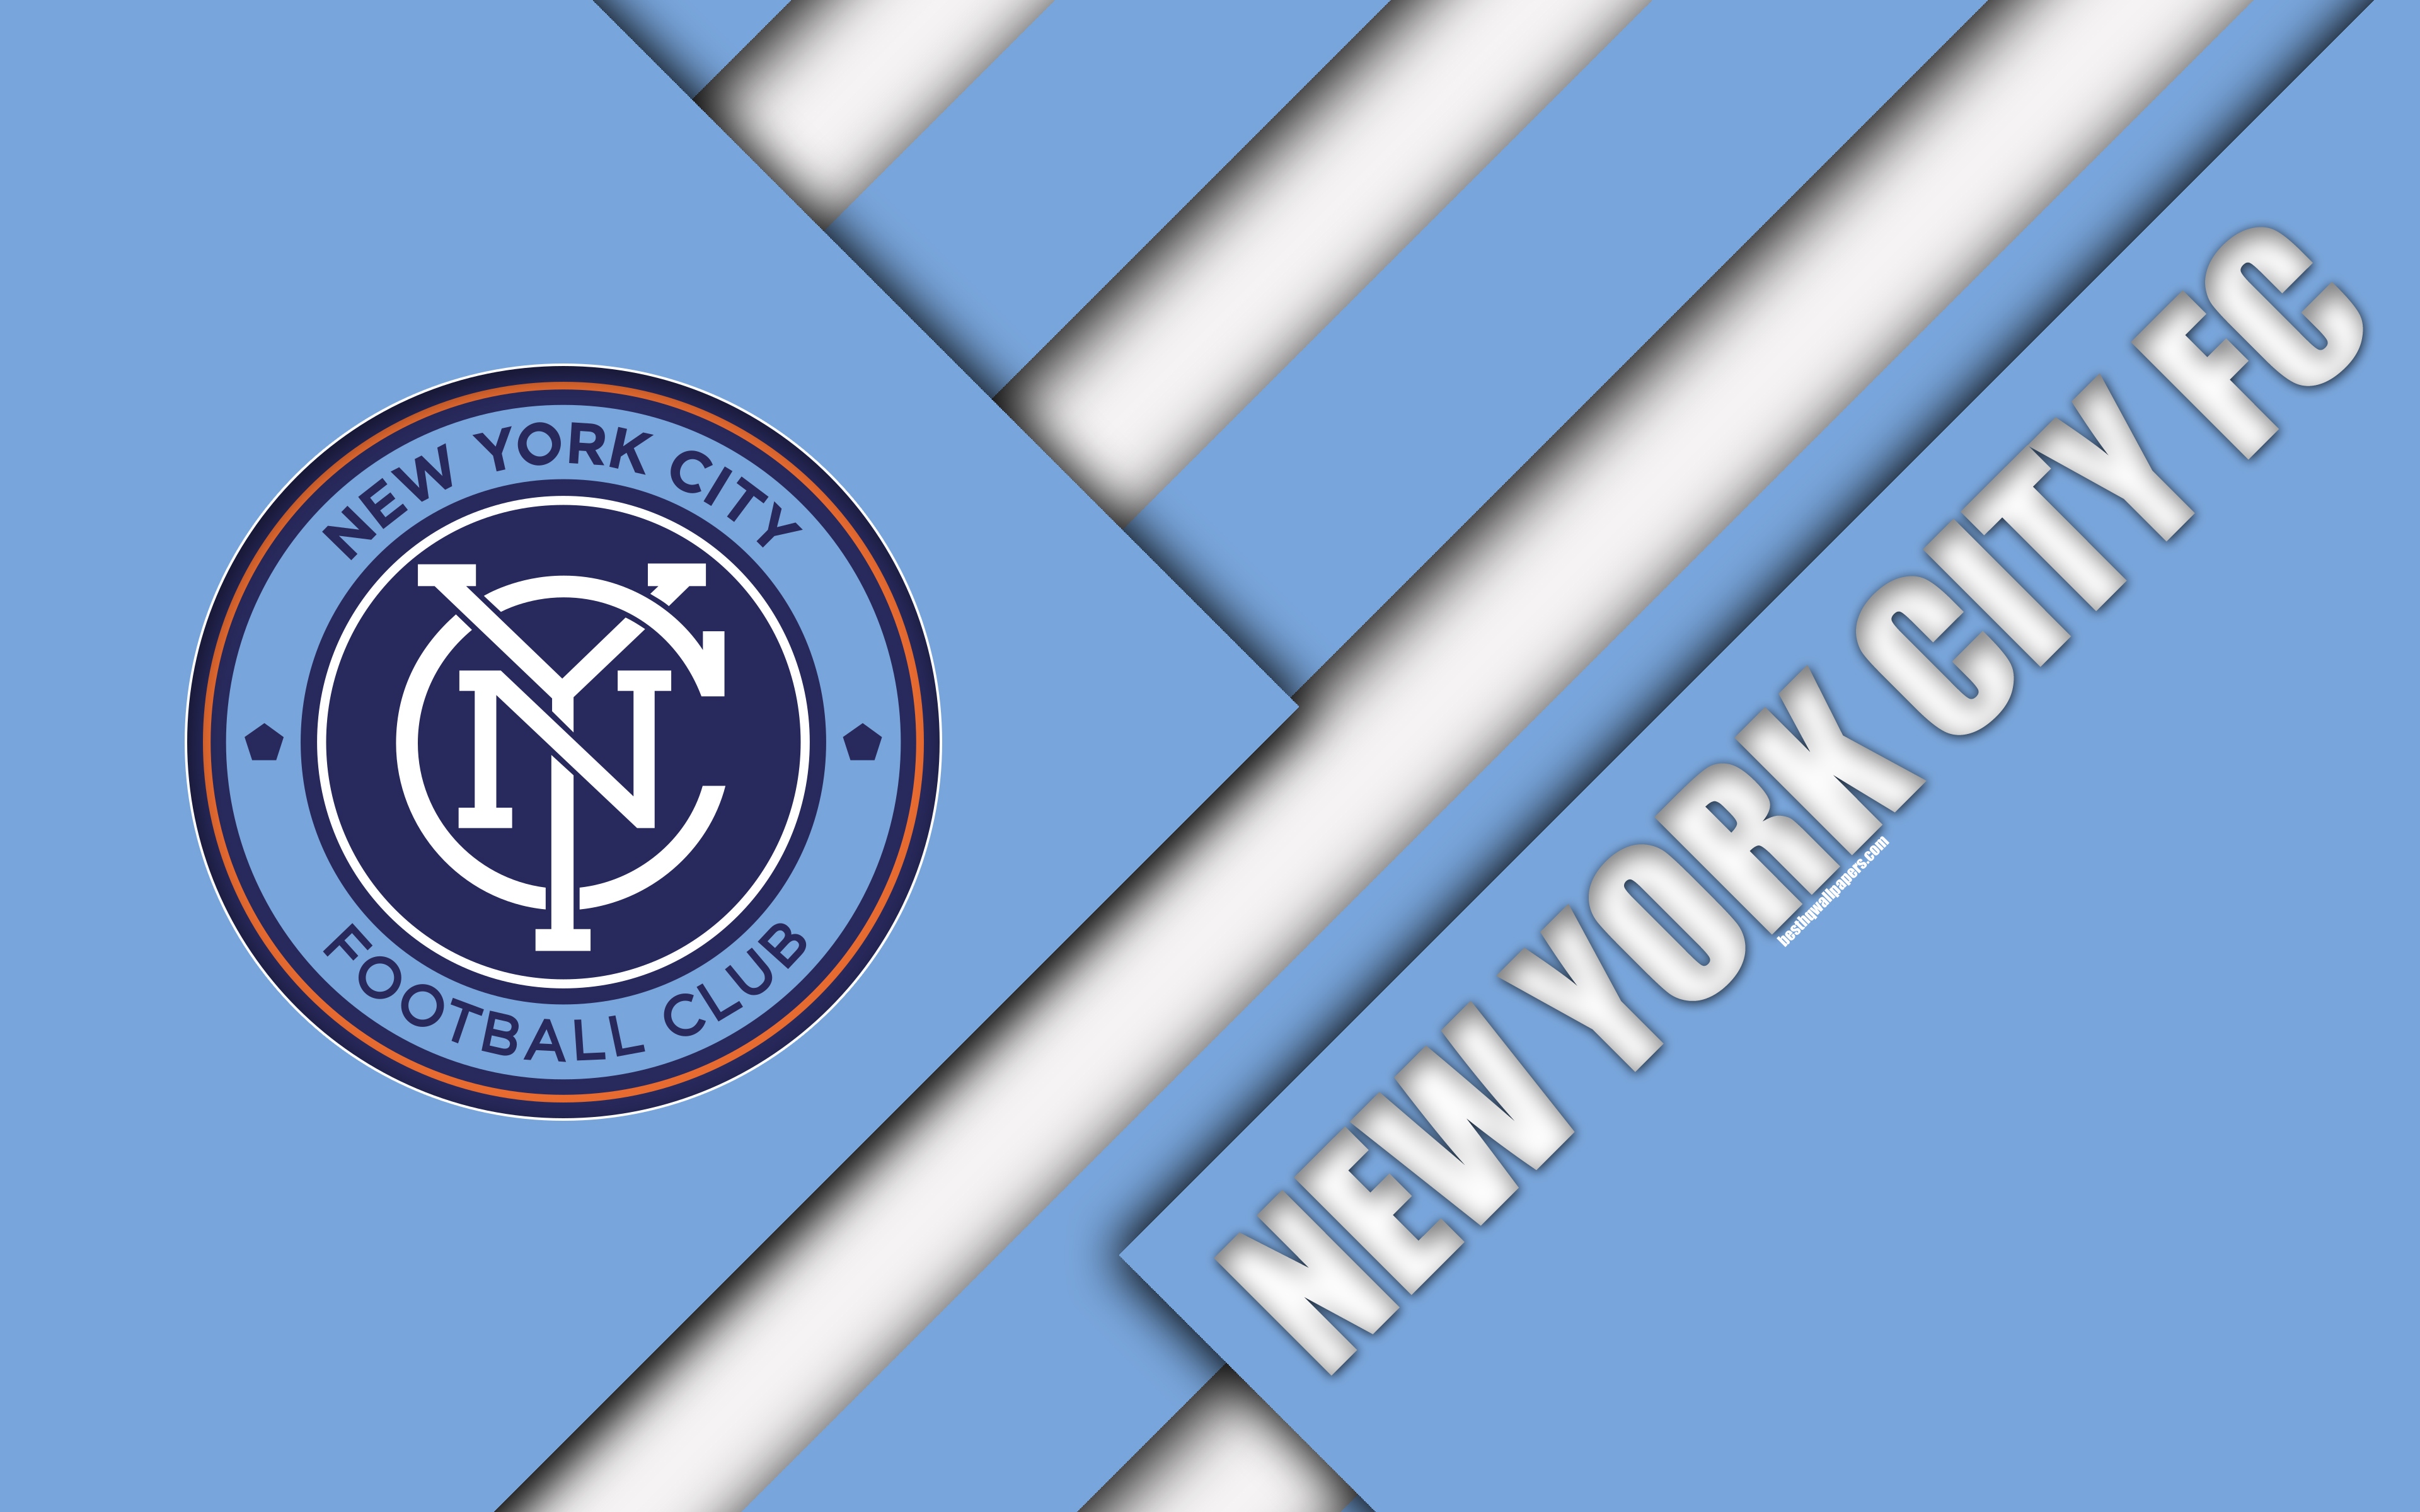 Download wallpaper New York City FC, material design, 4k, logo